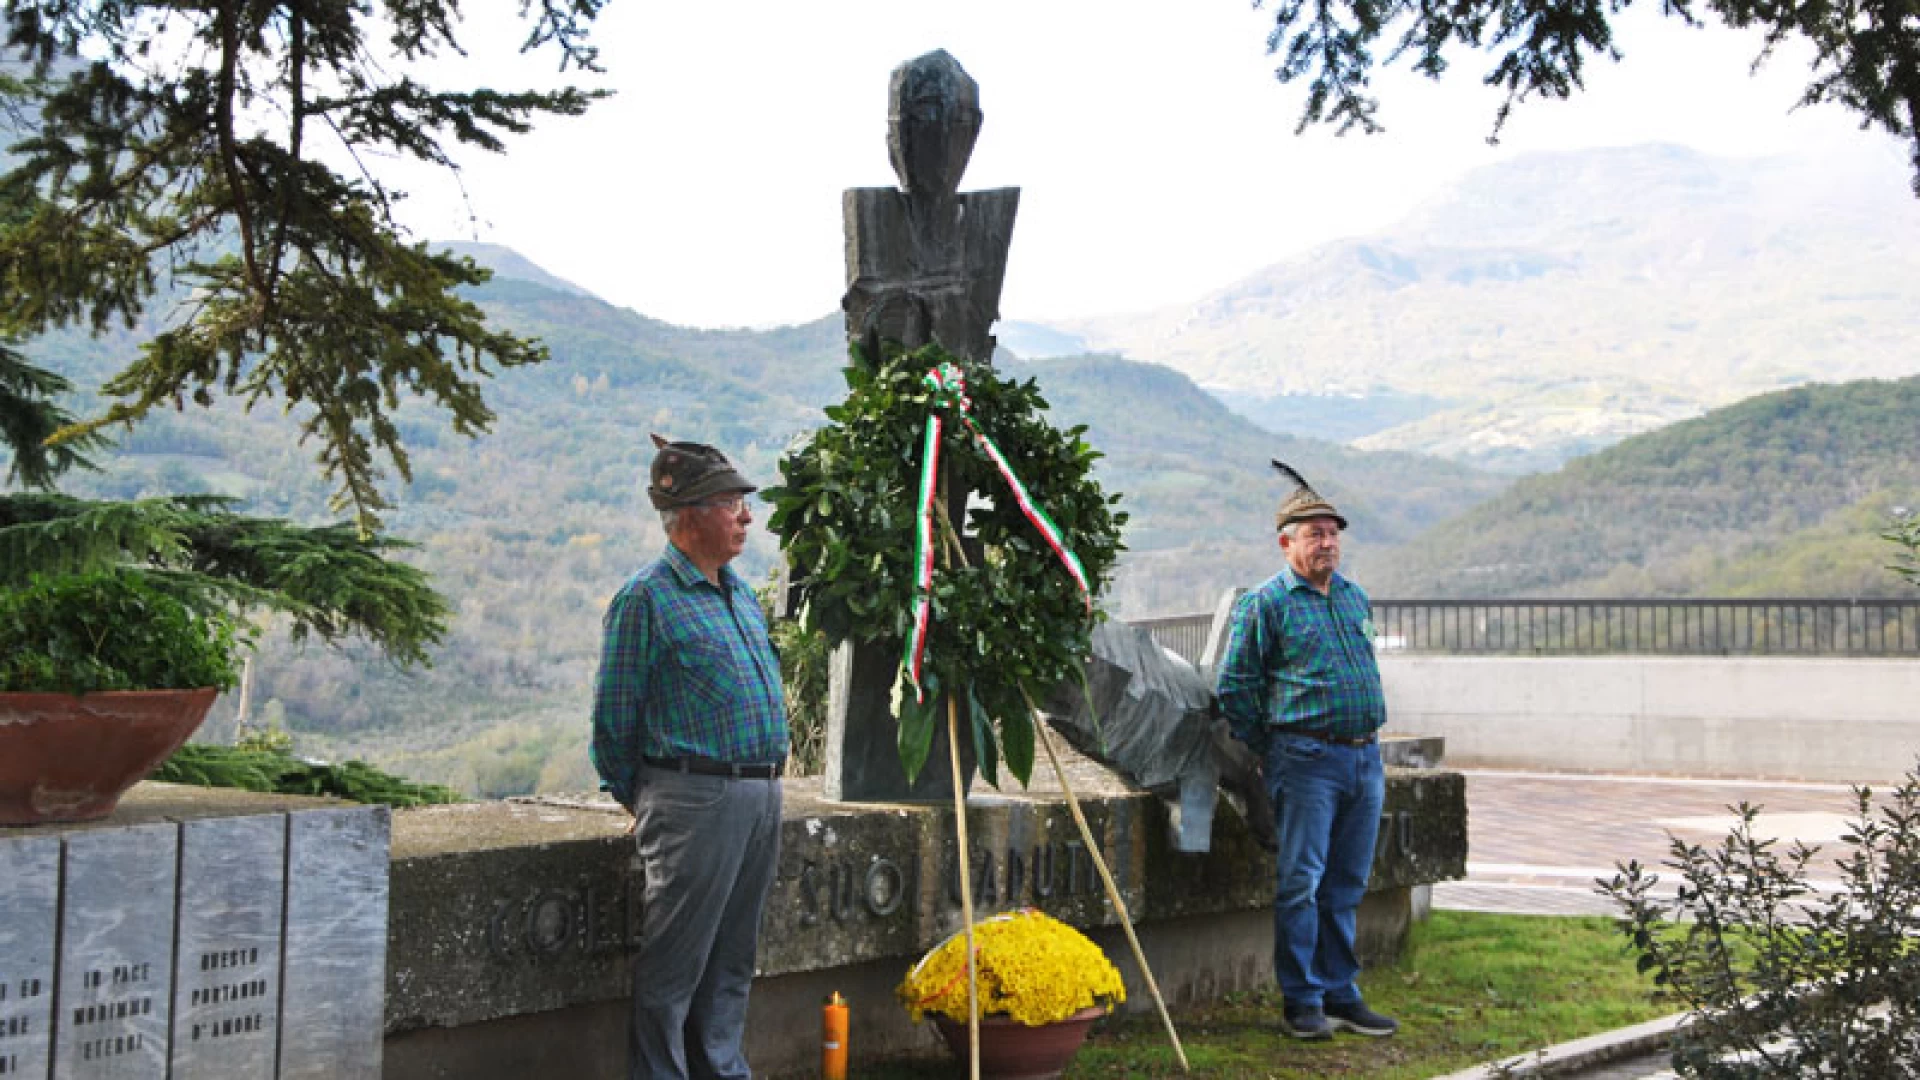 Colli a Volturno: cerimonia solenne del 4 novembre. Il paese commemora i suoi caduti.